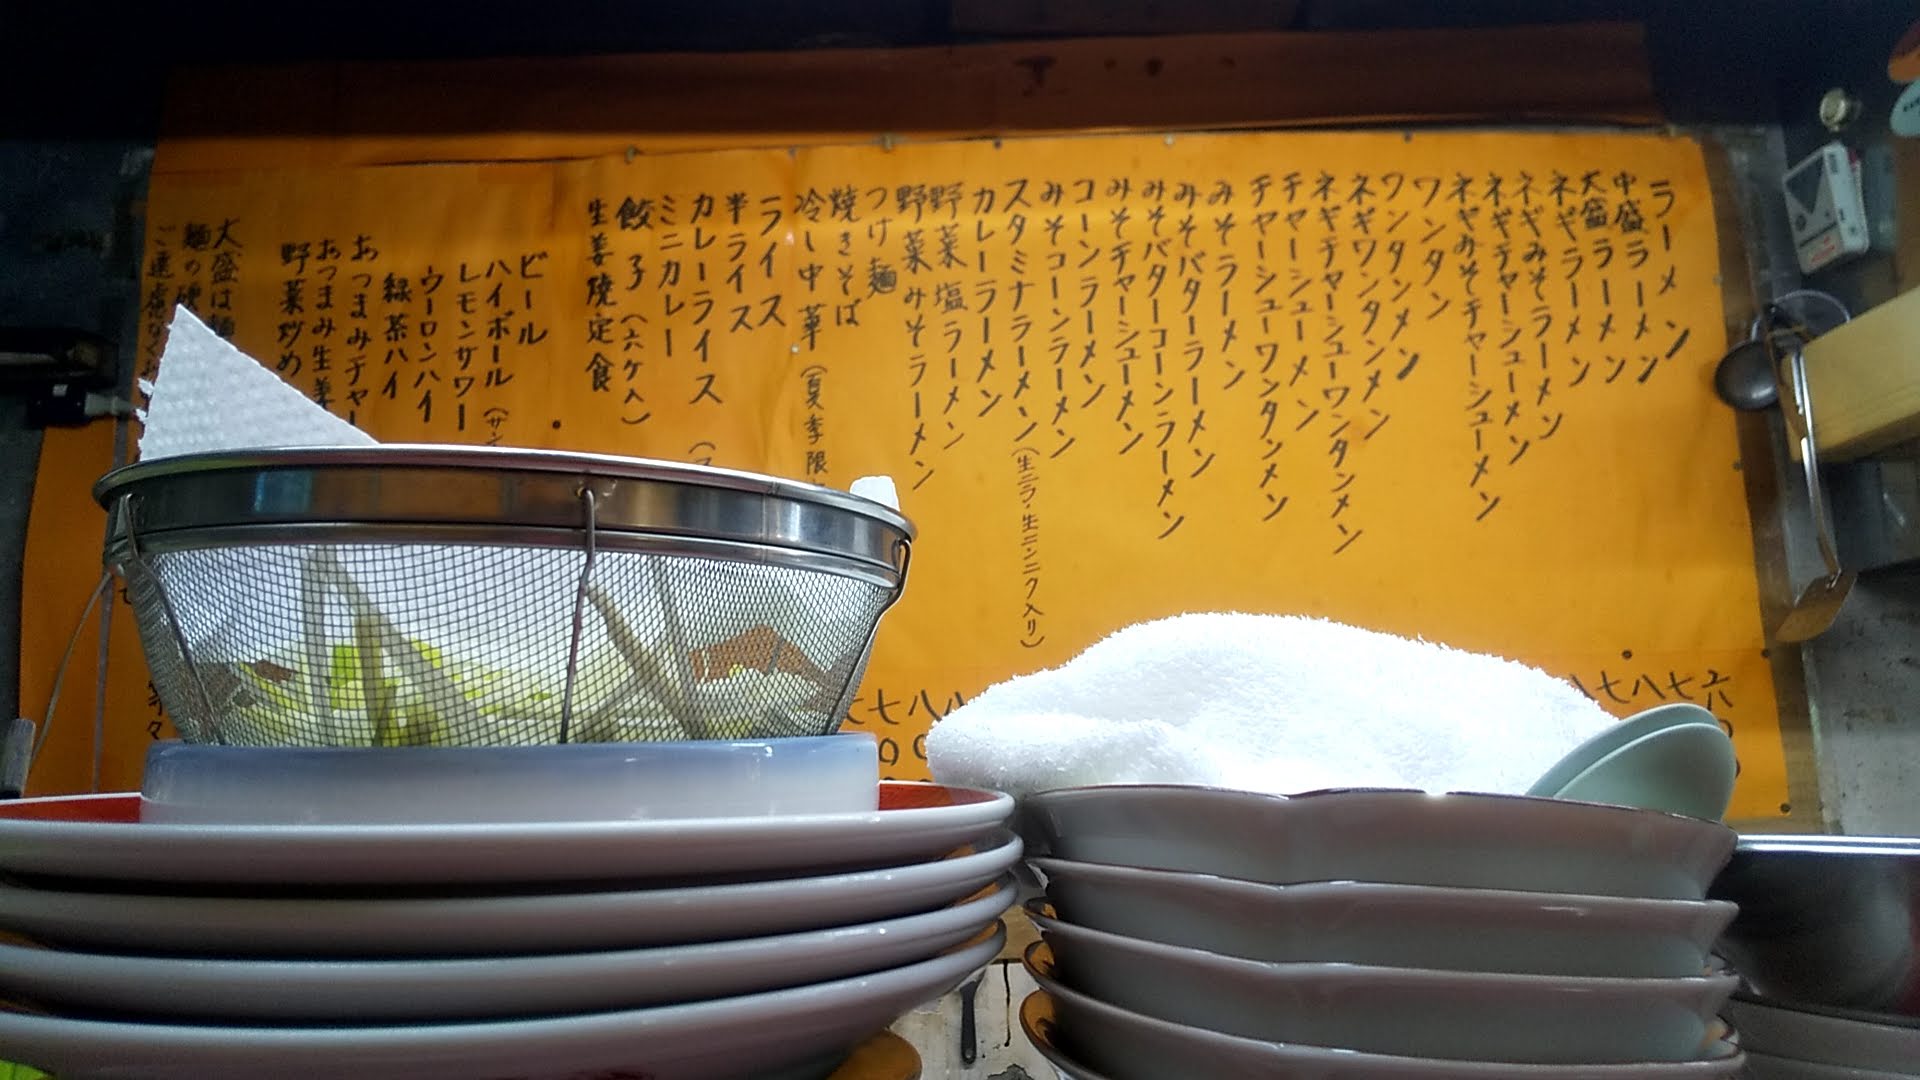 ラーメンショップひだかのつけ麺のメニューの写真